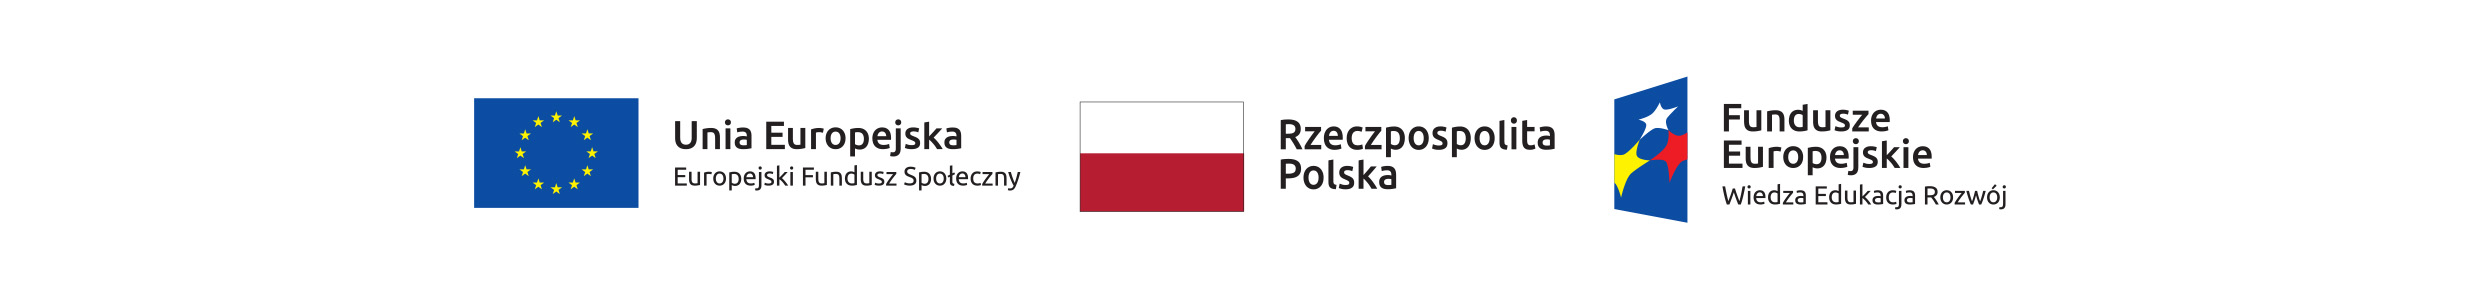 Elementy ozdobne -flaga Polski i Unii Europejskiej, napis Fundusze Europejskie, Program Wiedza Edukacja Rozwój